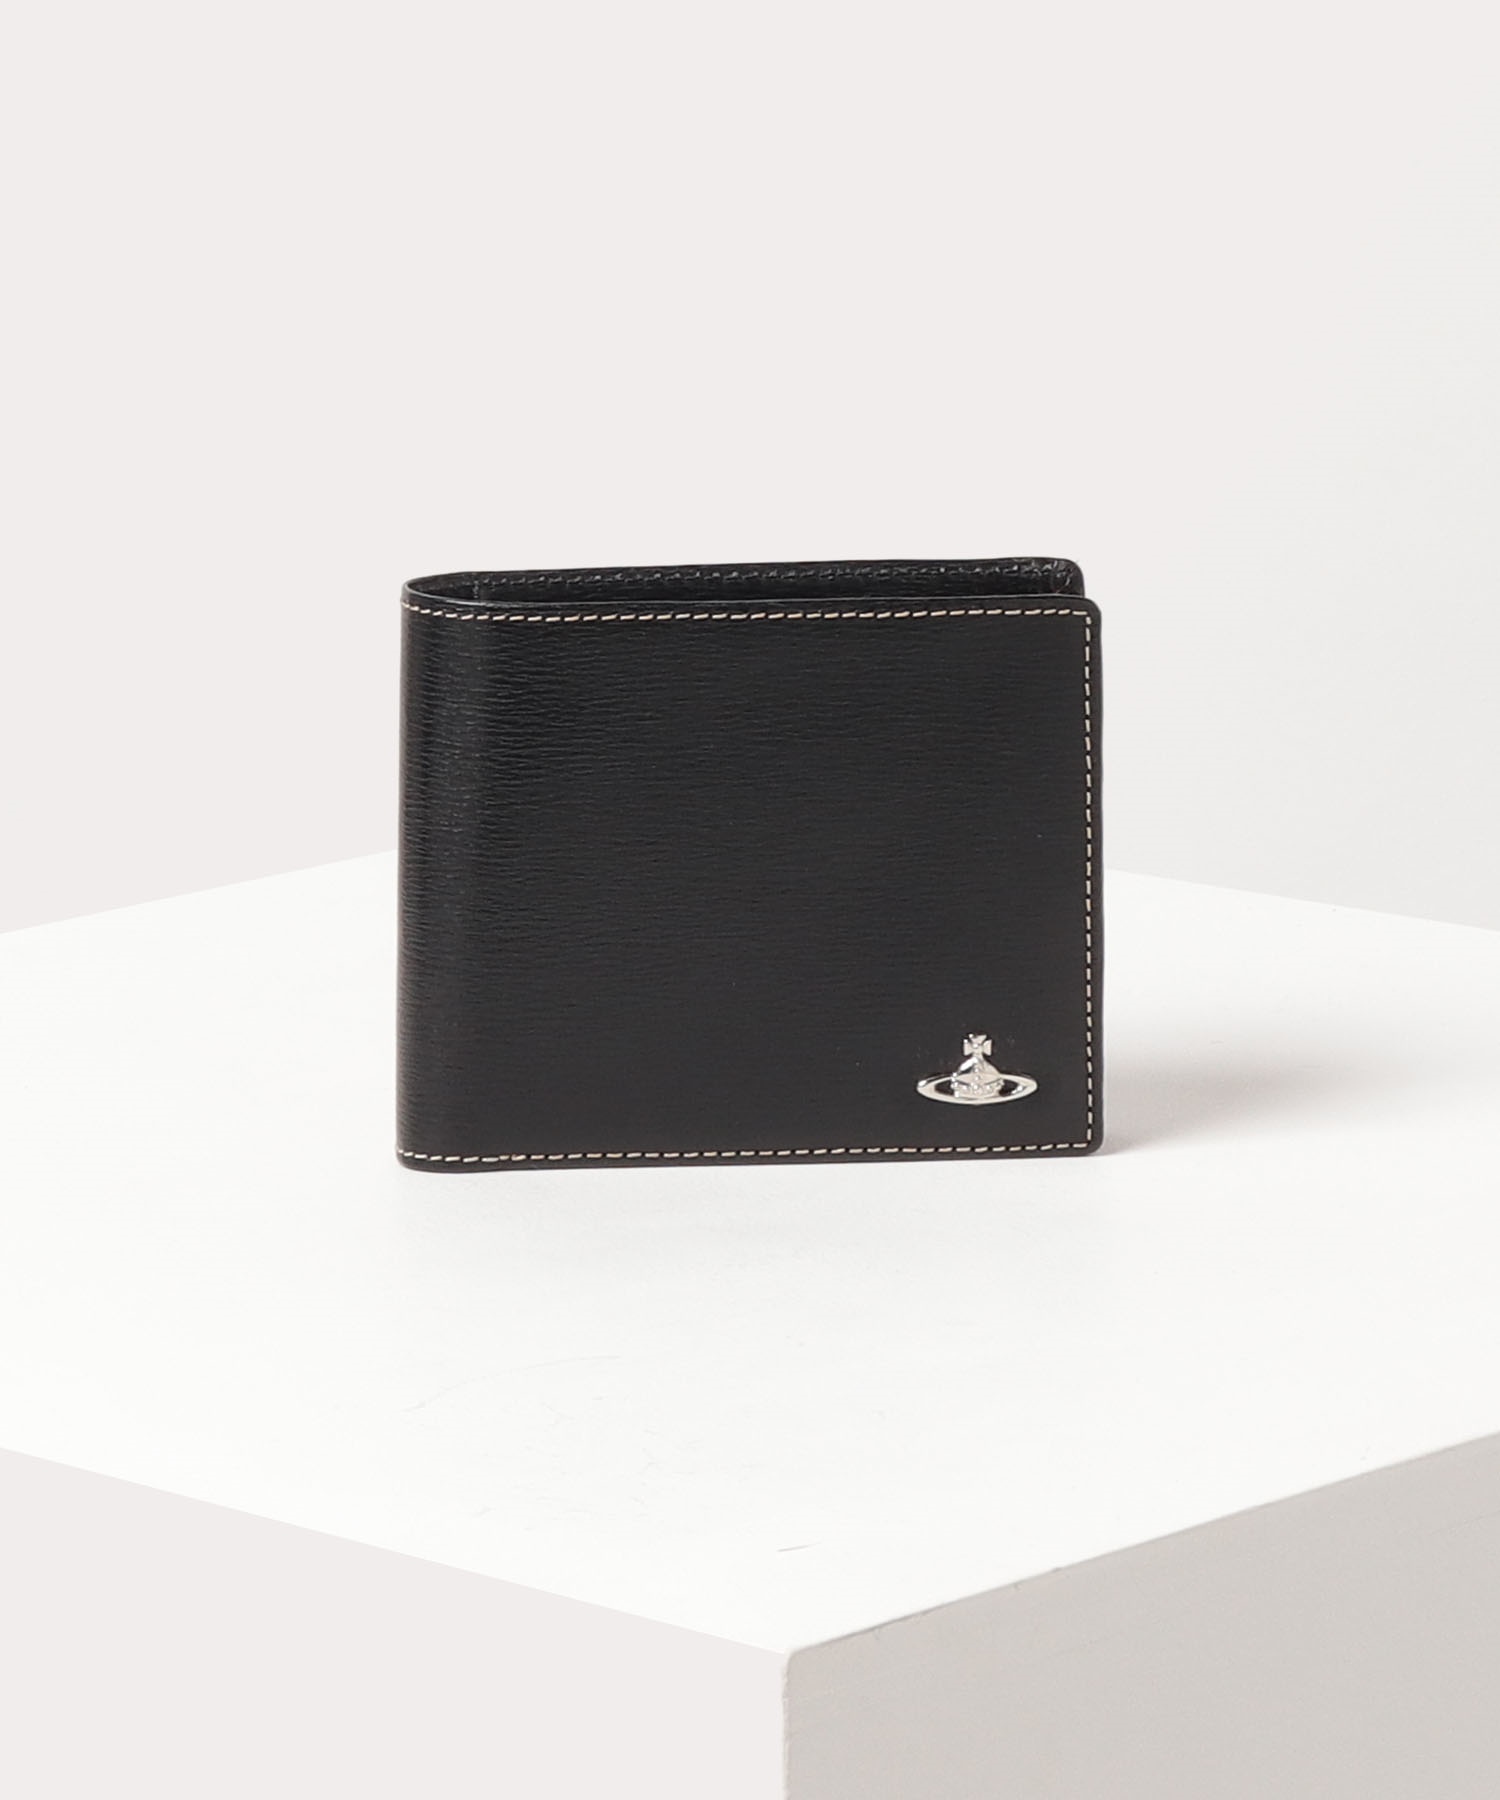 【新品未使用】Vivienne Westwood 折り財布 レザー 黒 ブラック一期一会財布